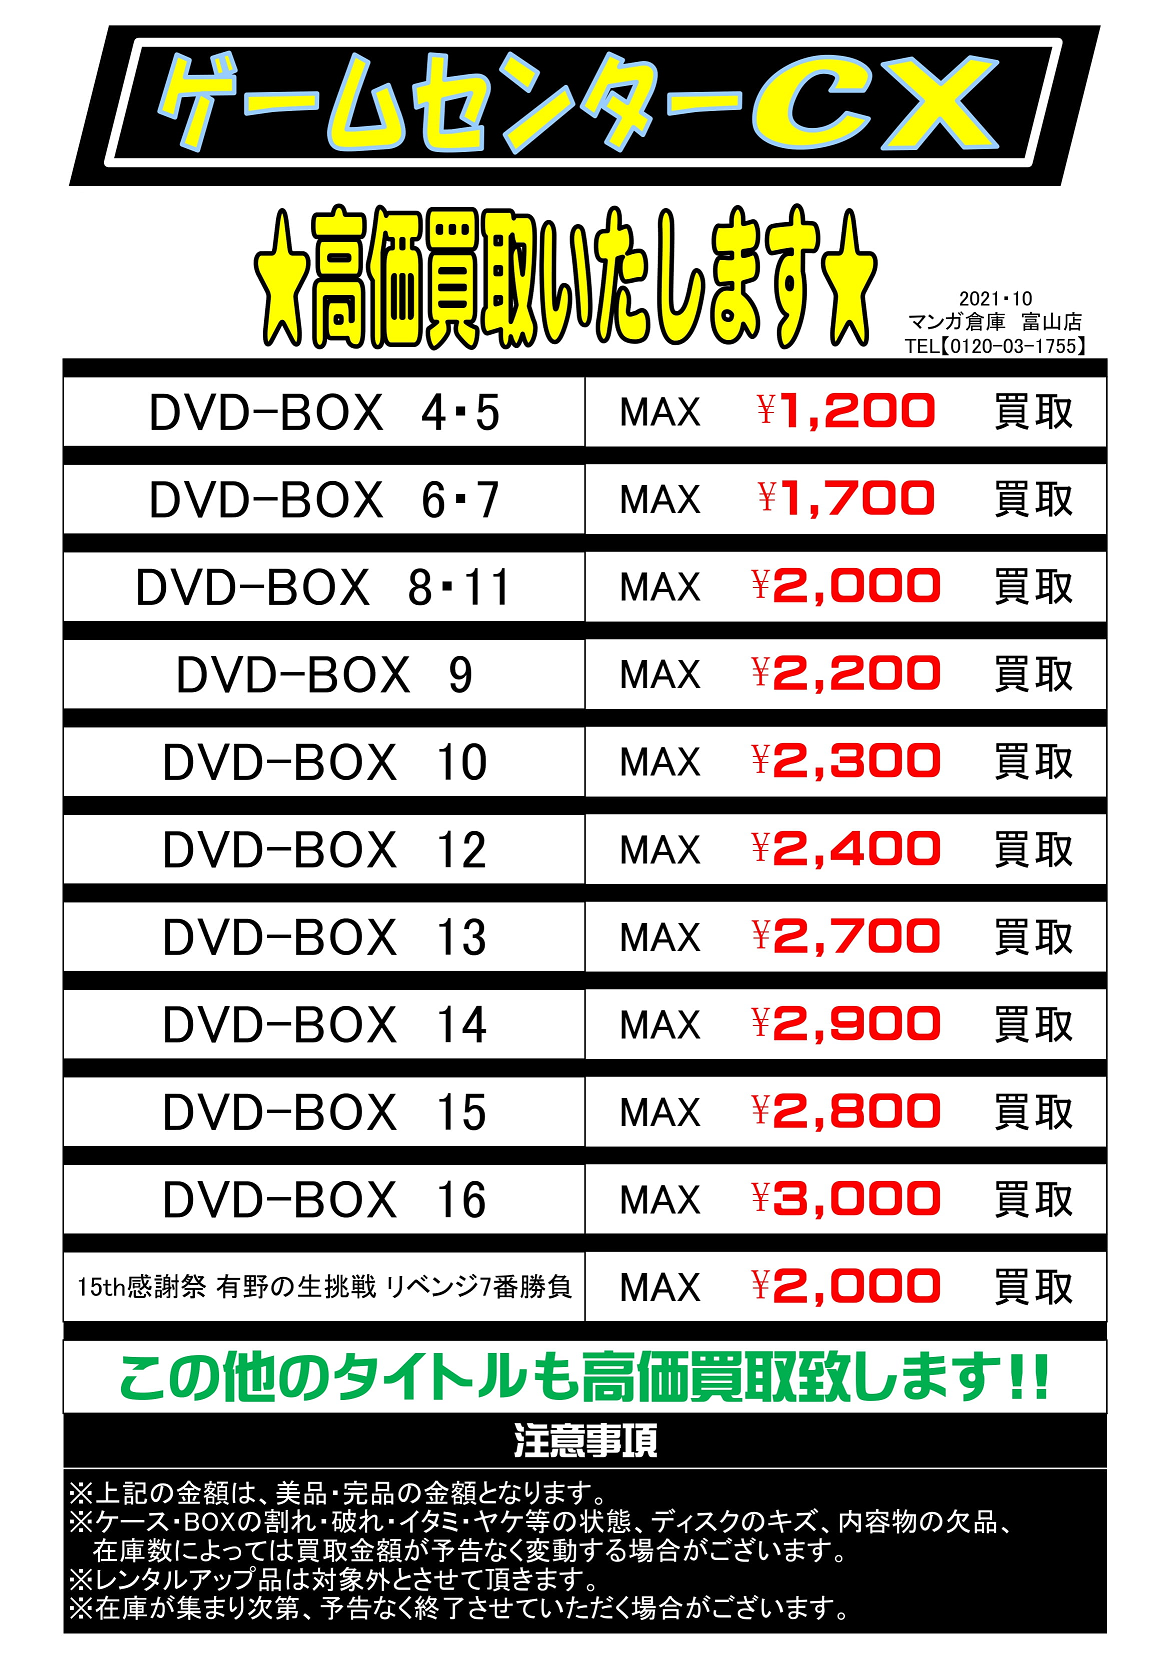 ゲームセンターCX DVD-BOX1、2、3、4、7、8、9、10 | nate-hospital.com